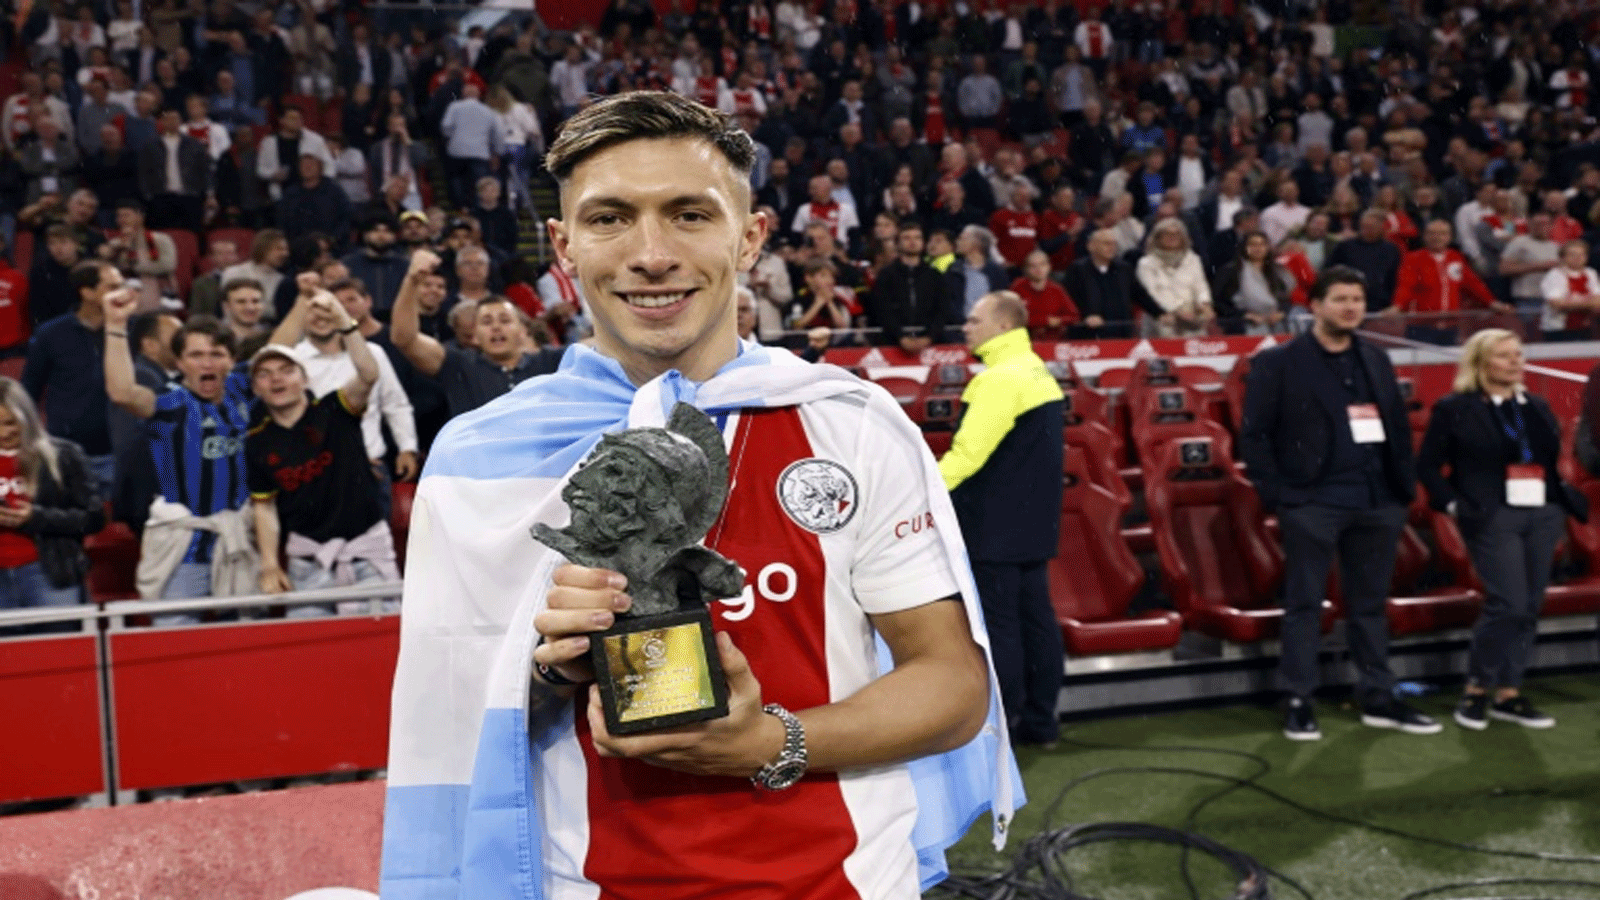 الأرجنتيني ليساندرو مارتينيس مدافع أياكس أمستردام الهولندي مع جائزة رينوس-ميتشيلز لأفضل لاعب في العام بعد فوز فريقه بلقب الدوري على ملعب ملعب يوهان كرويف أرينا، أمستردام. في 11 أيار/مايو 2022 